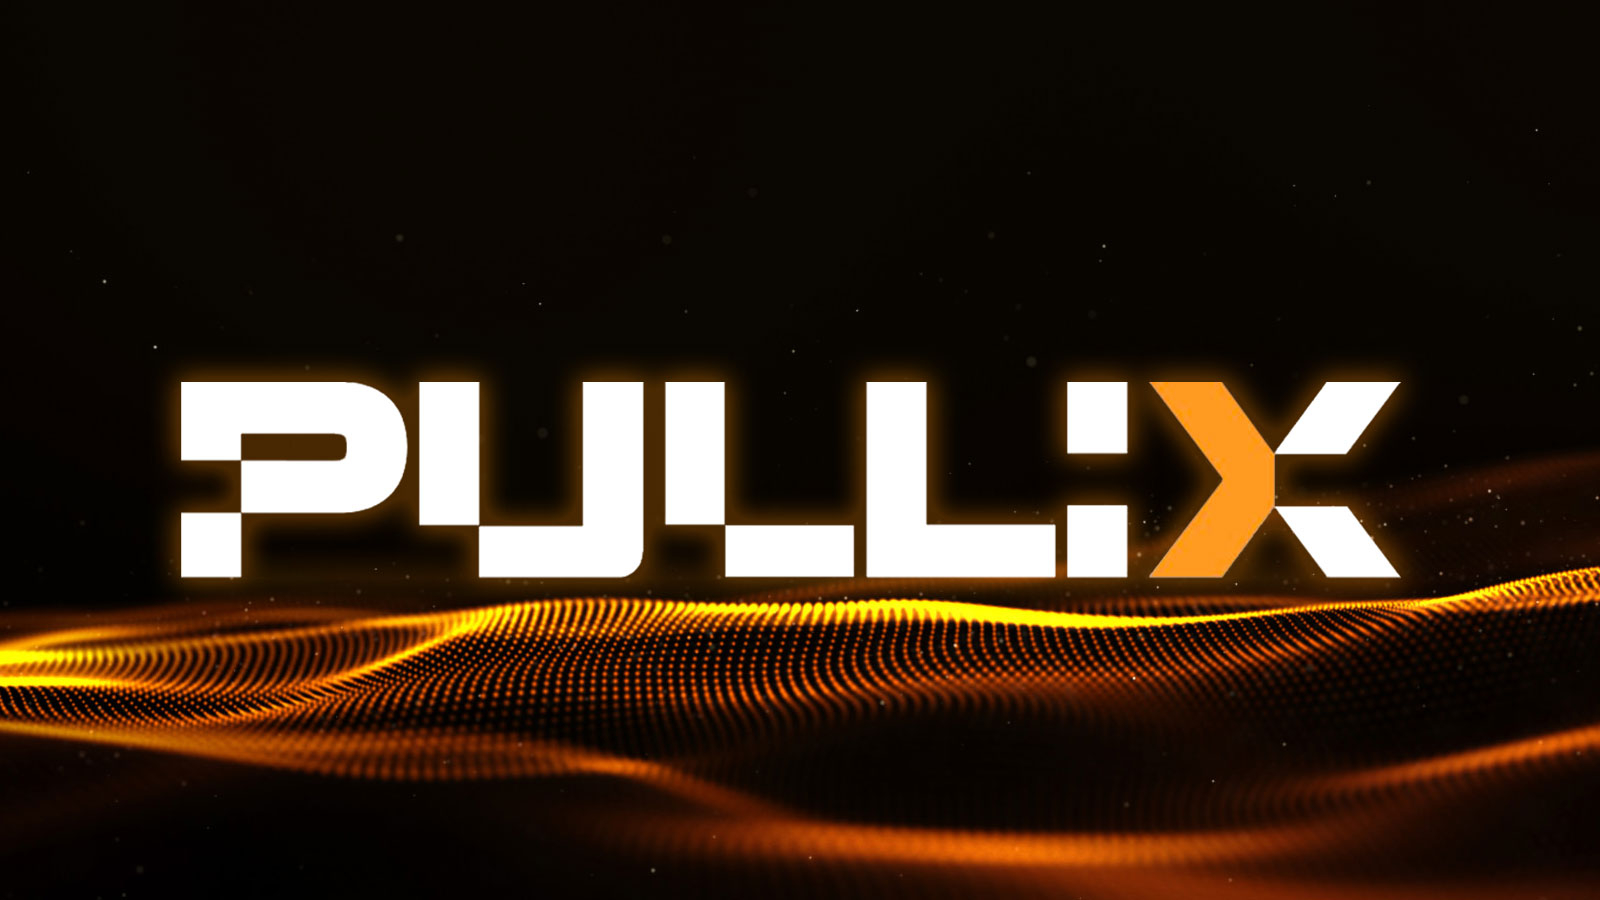 Pullix (PLX) Altcoin Release in Focus for Aggressive Investors since Shiba Inu (SHIB) Making Headlines